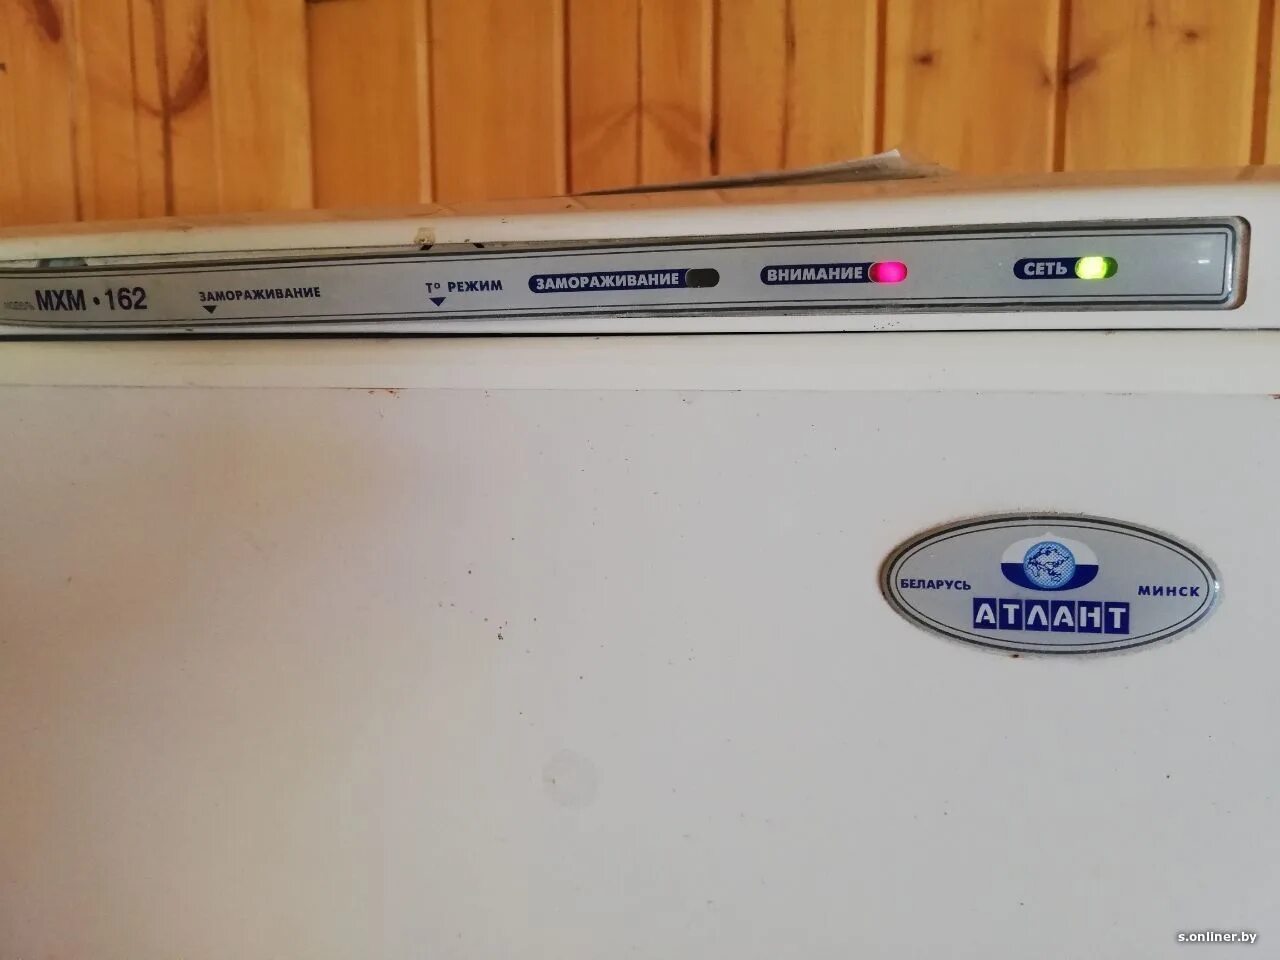 Холодильник Атлант двухкамерный 4410 индикаторы. Холодильник Атлант 2 Compressors индикаторы на панели. Панель управления холодильника Атлант 2 компрессора. Атлант холодильник 2 компрессора панель индикаторов. Морозилка атлант горит